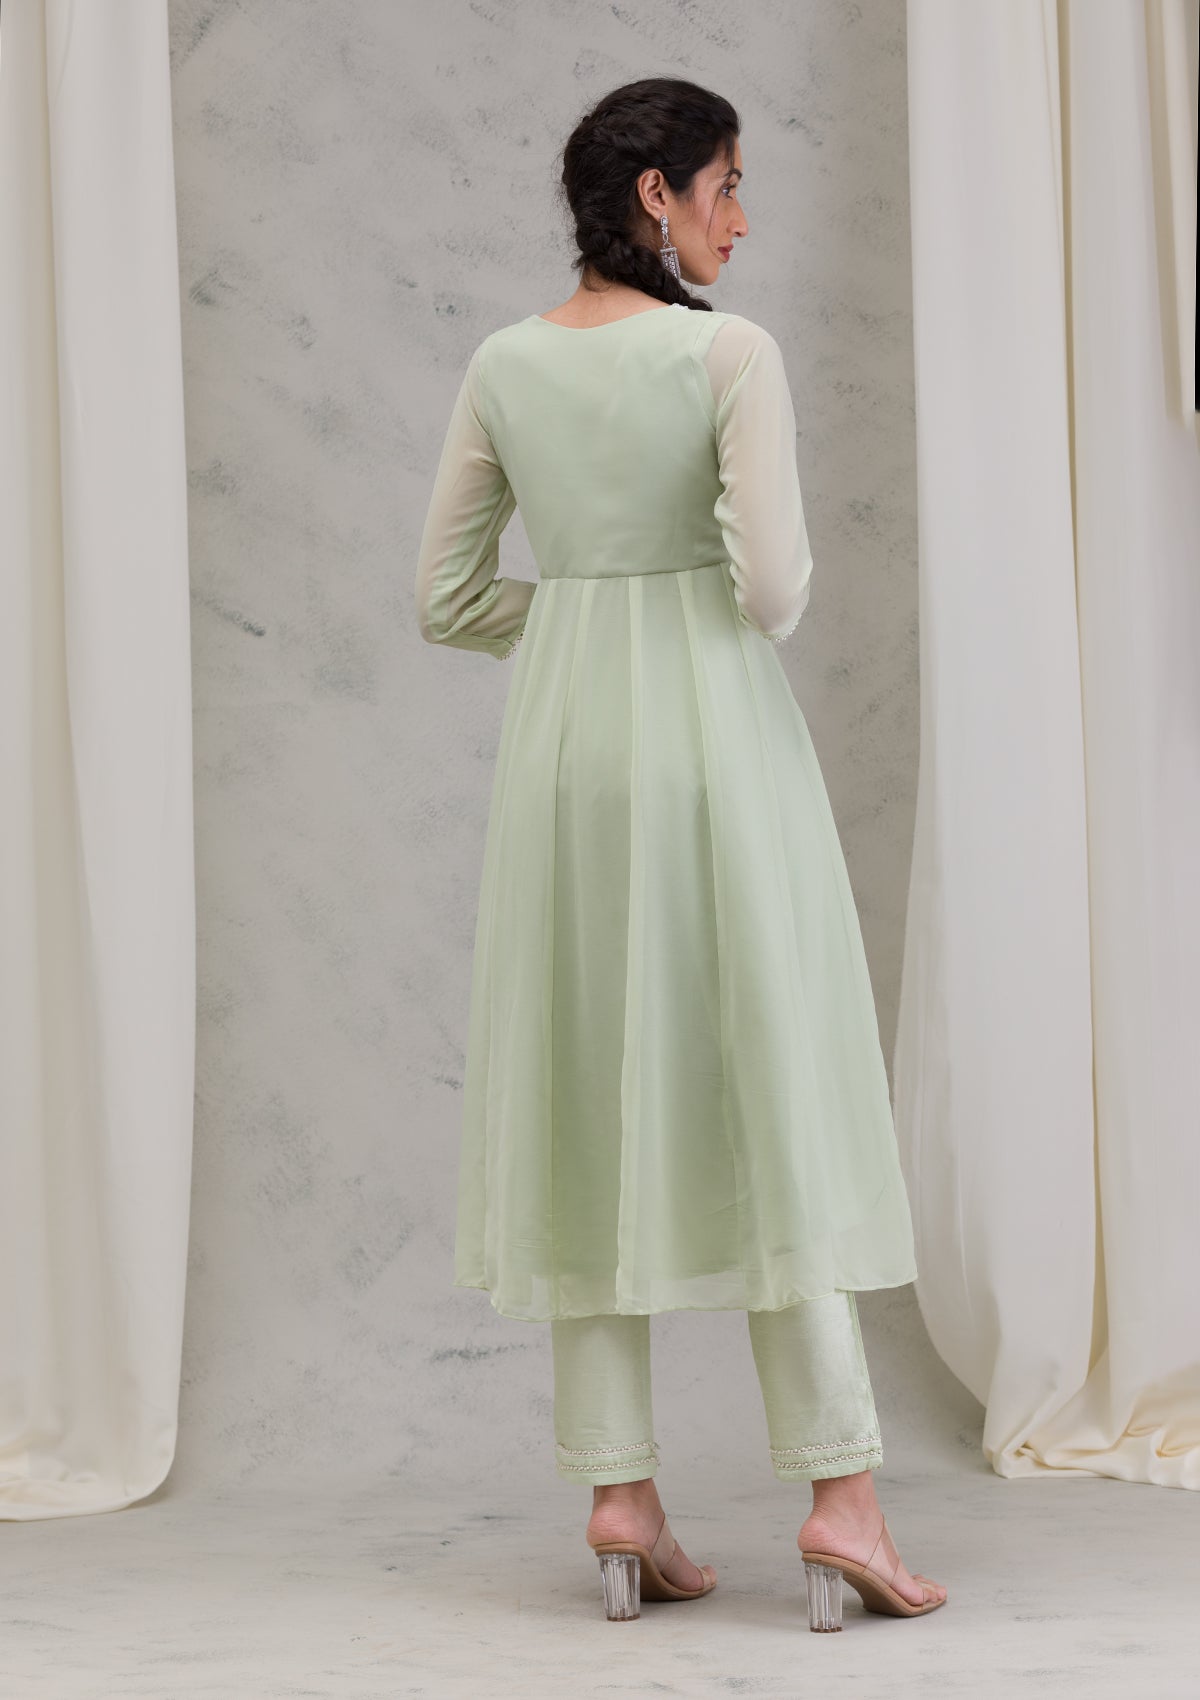 Pista Green Threadwork Georgette Readymade Salwar Suit